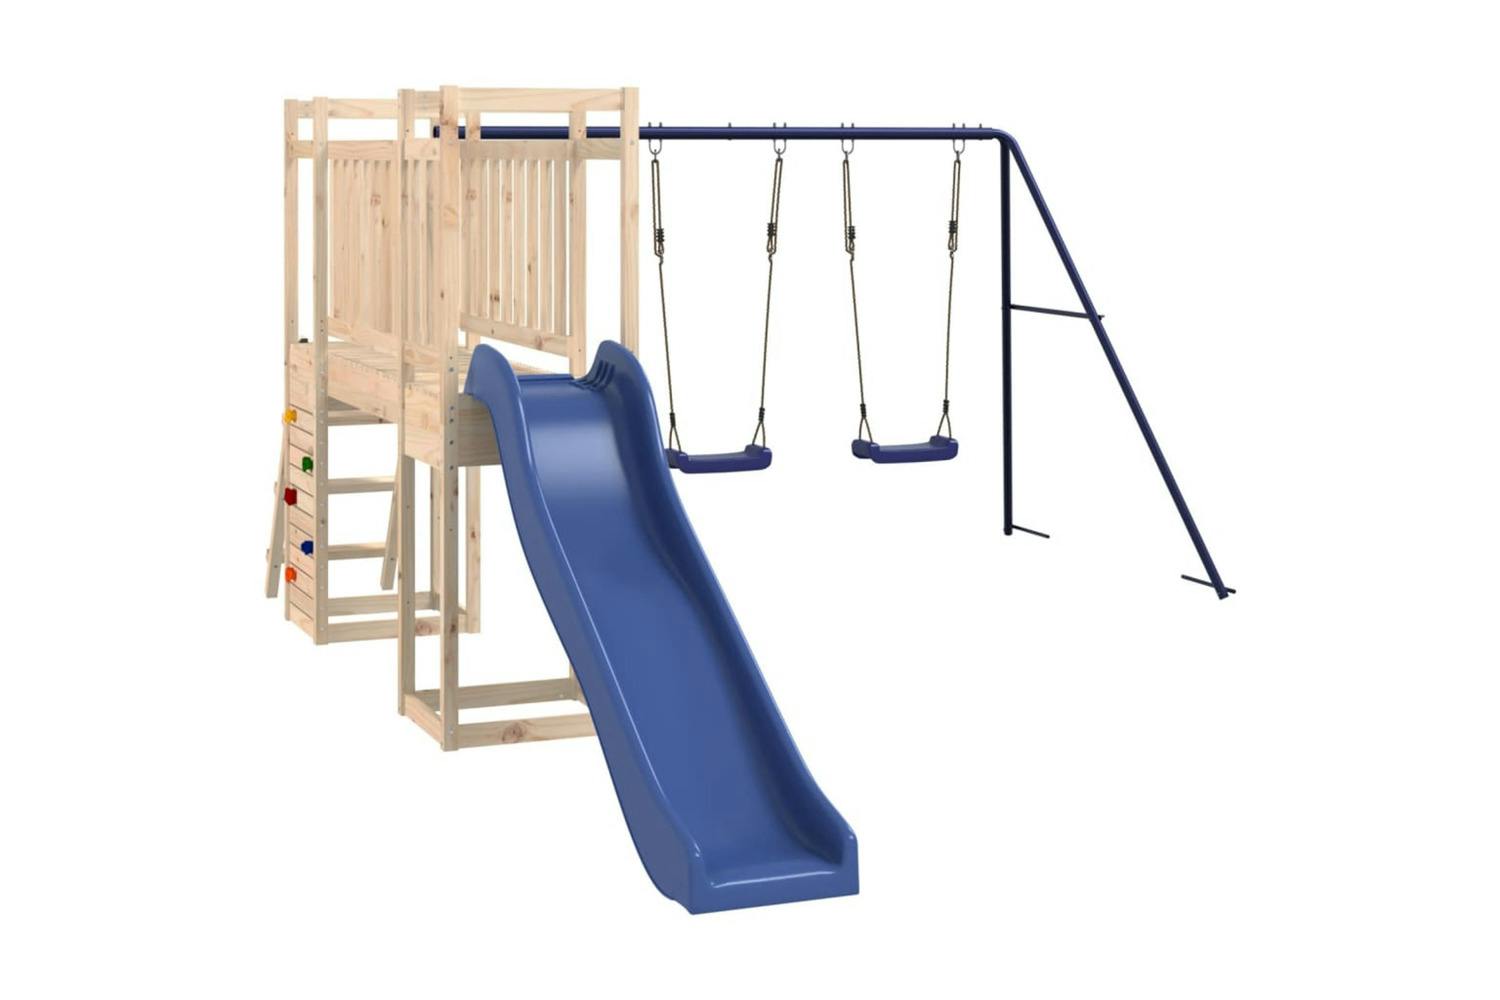 Vidaxl 3155930 Playhouse With Slide Ladder Swings Solid Wood Pine